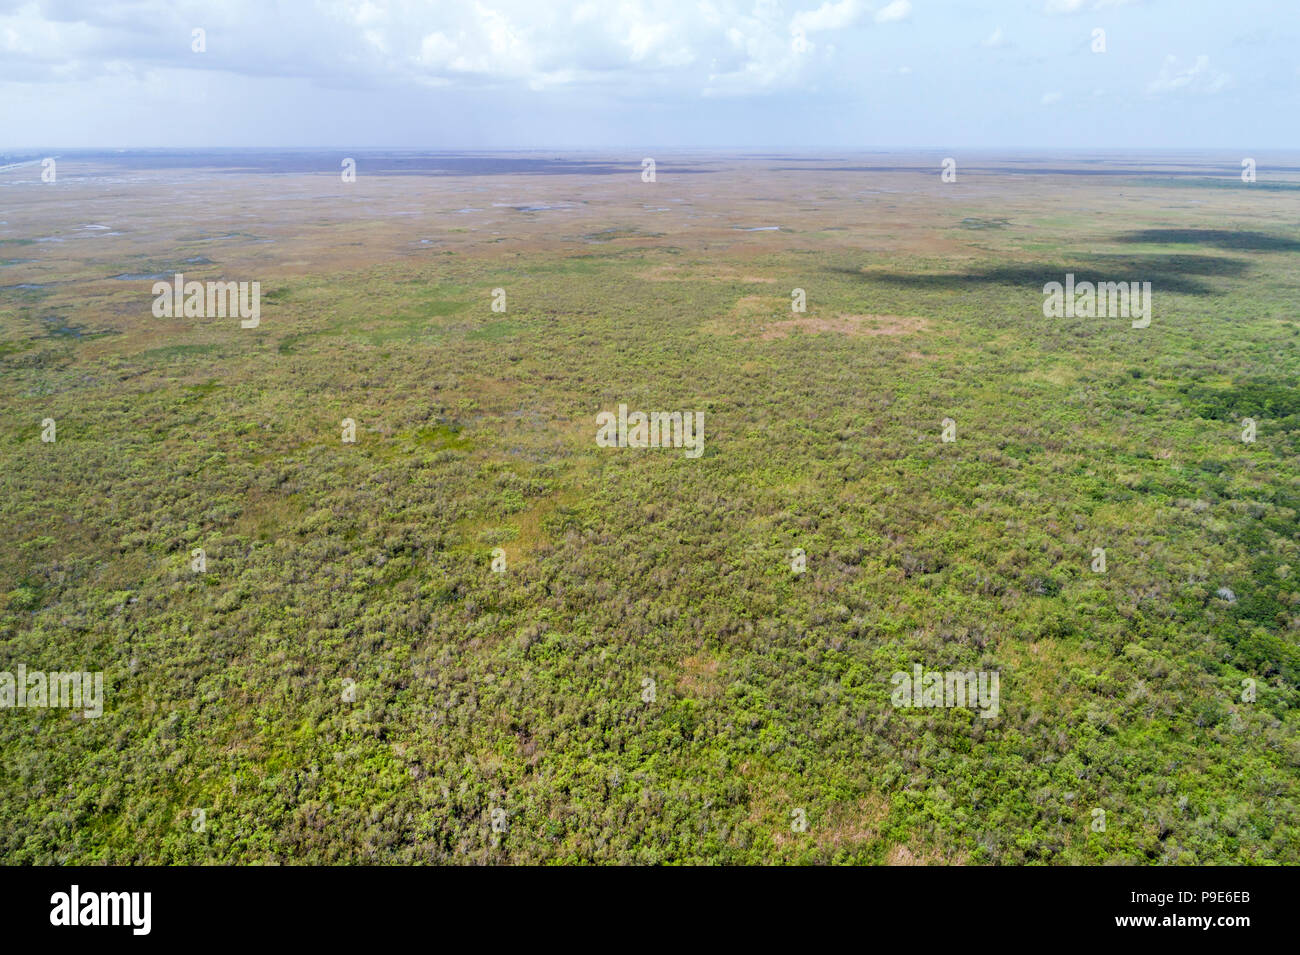 Miami Florida, Everglades National Park, Freshwater slough, Luftaufnahme aus der Vogelperspektive oben, Besucher reisen Reise Tour touristisches Wahrzeichen Stockfoto